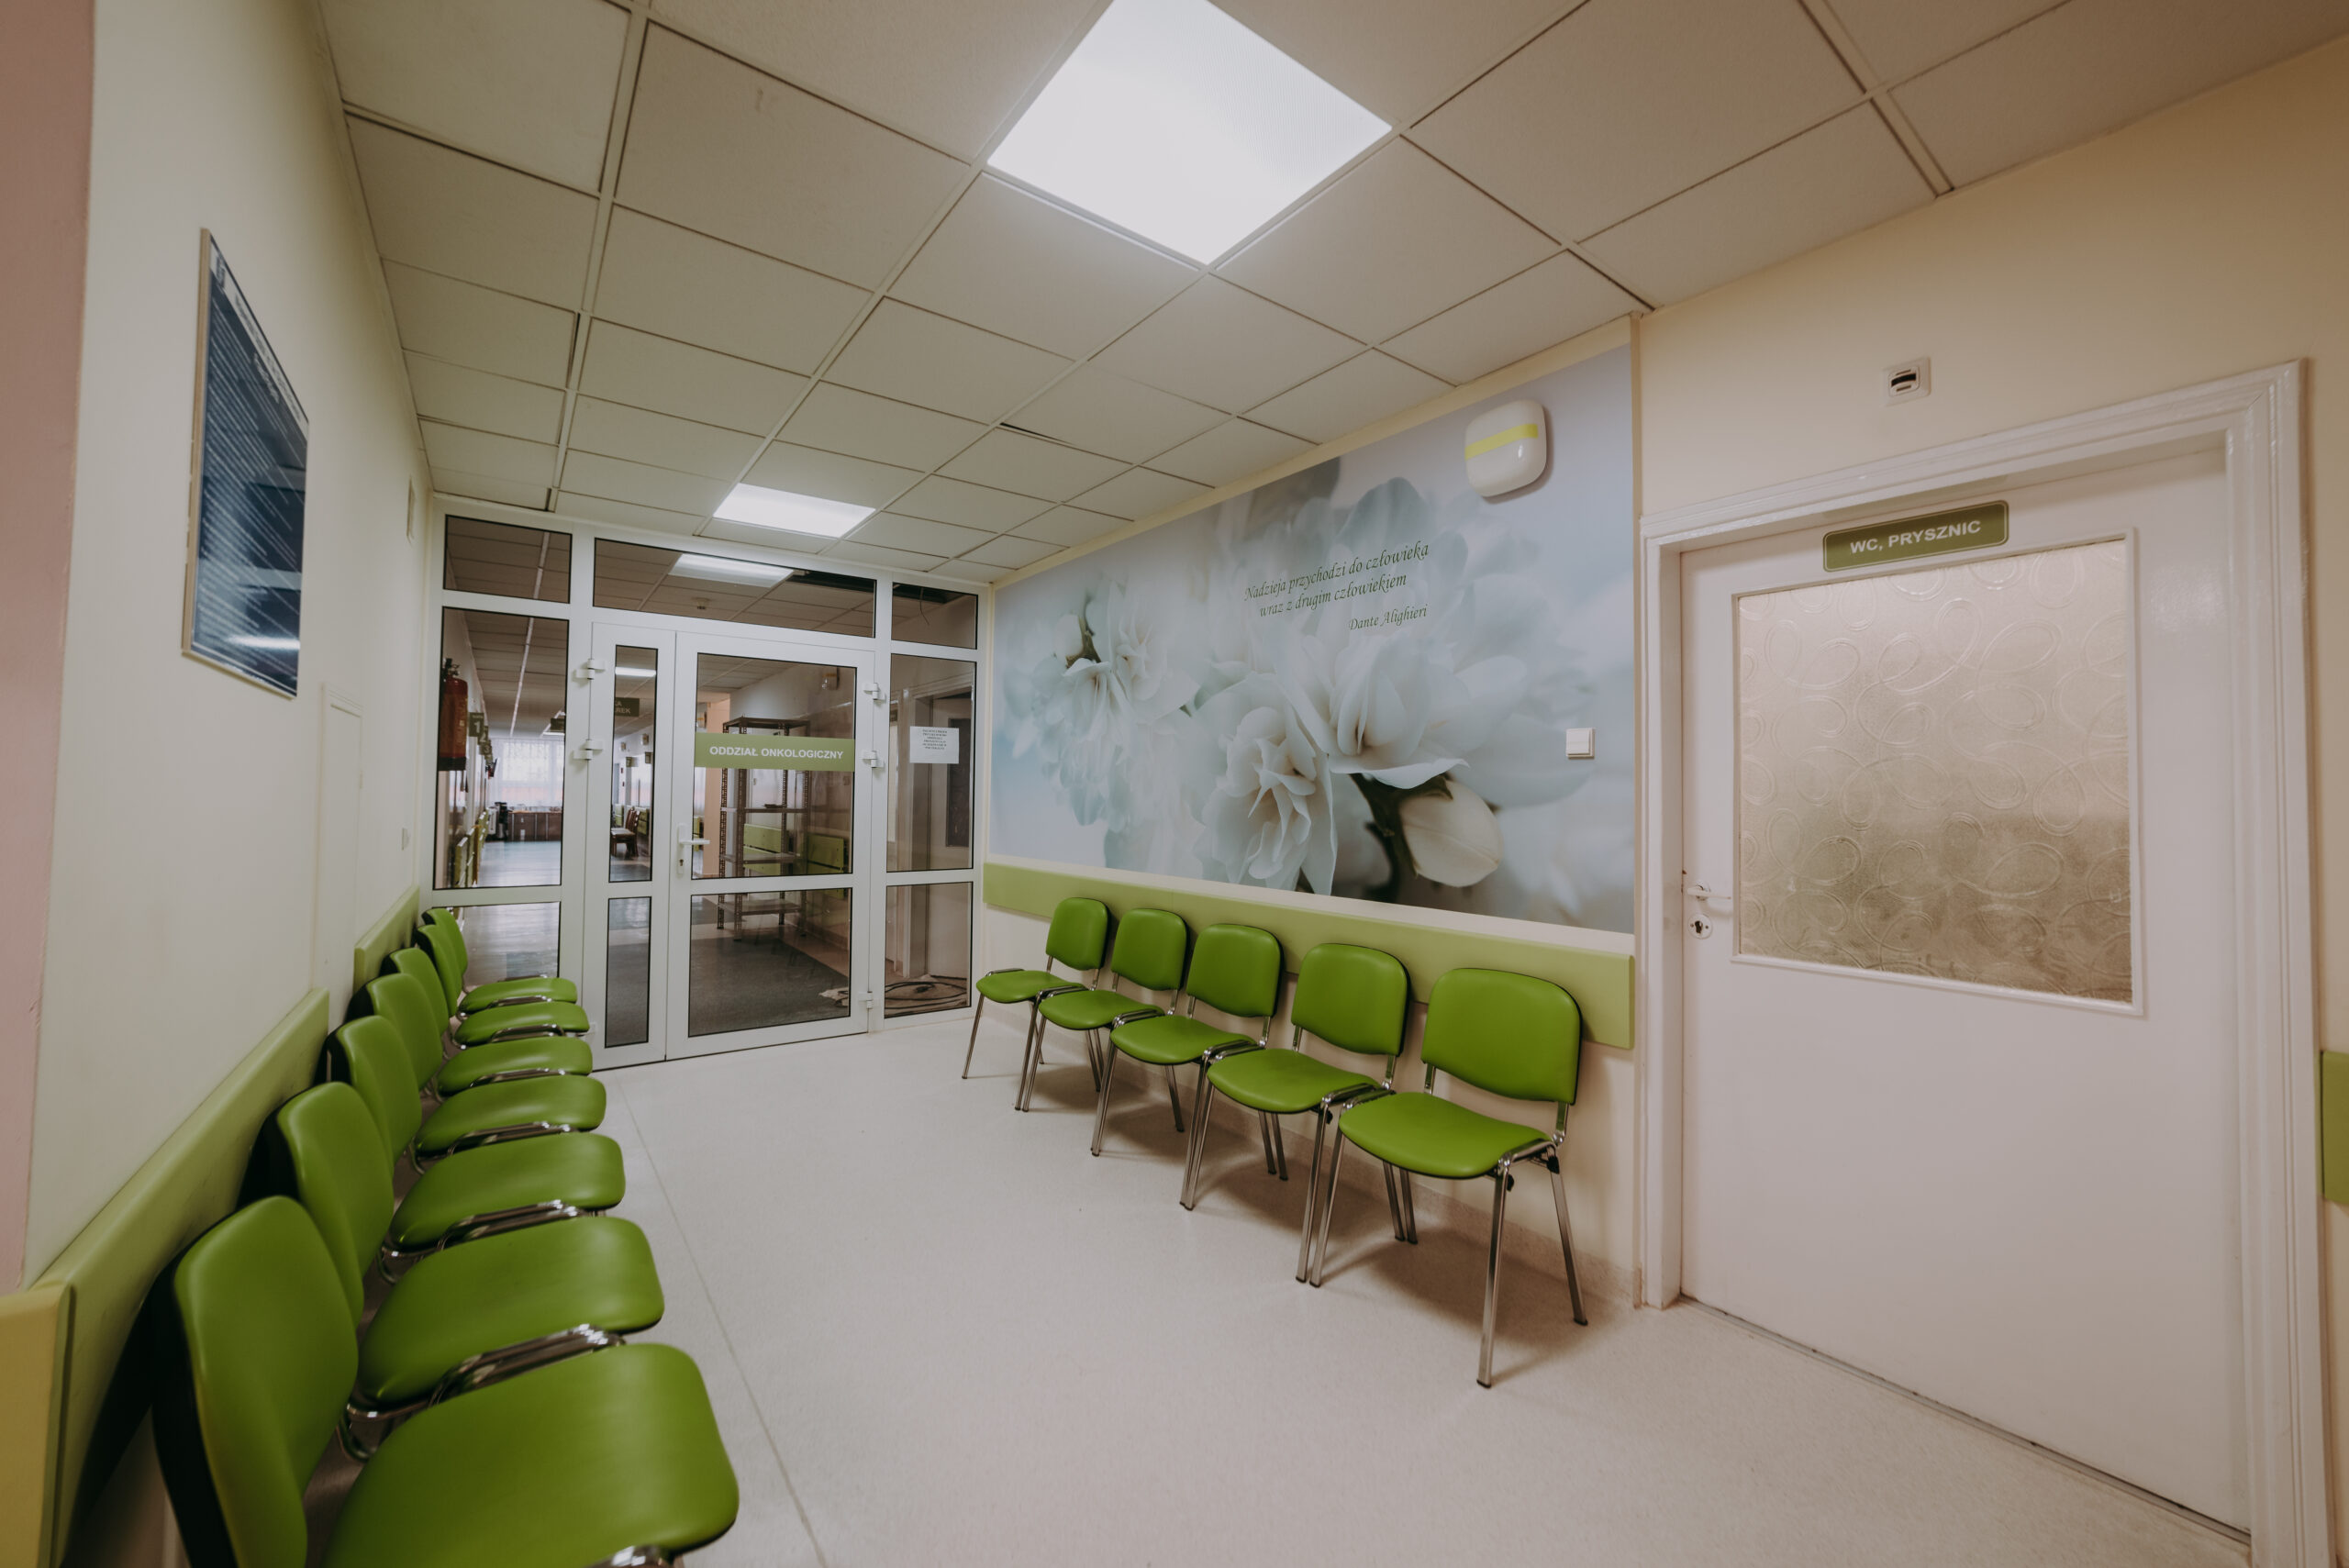 korytarz na oddziale onkologii, wzdłuż ścian stoją zielone krzesła, na ścianie fototapeta w stonowanym zielonym kolorze